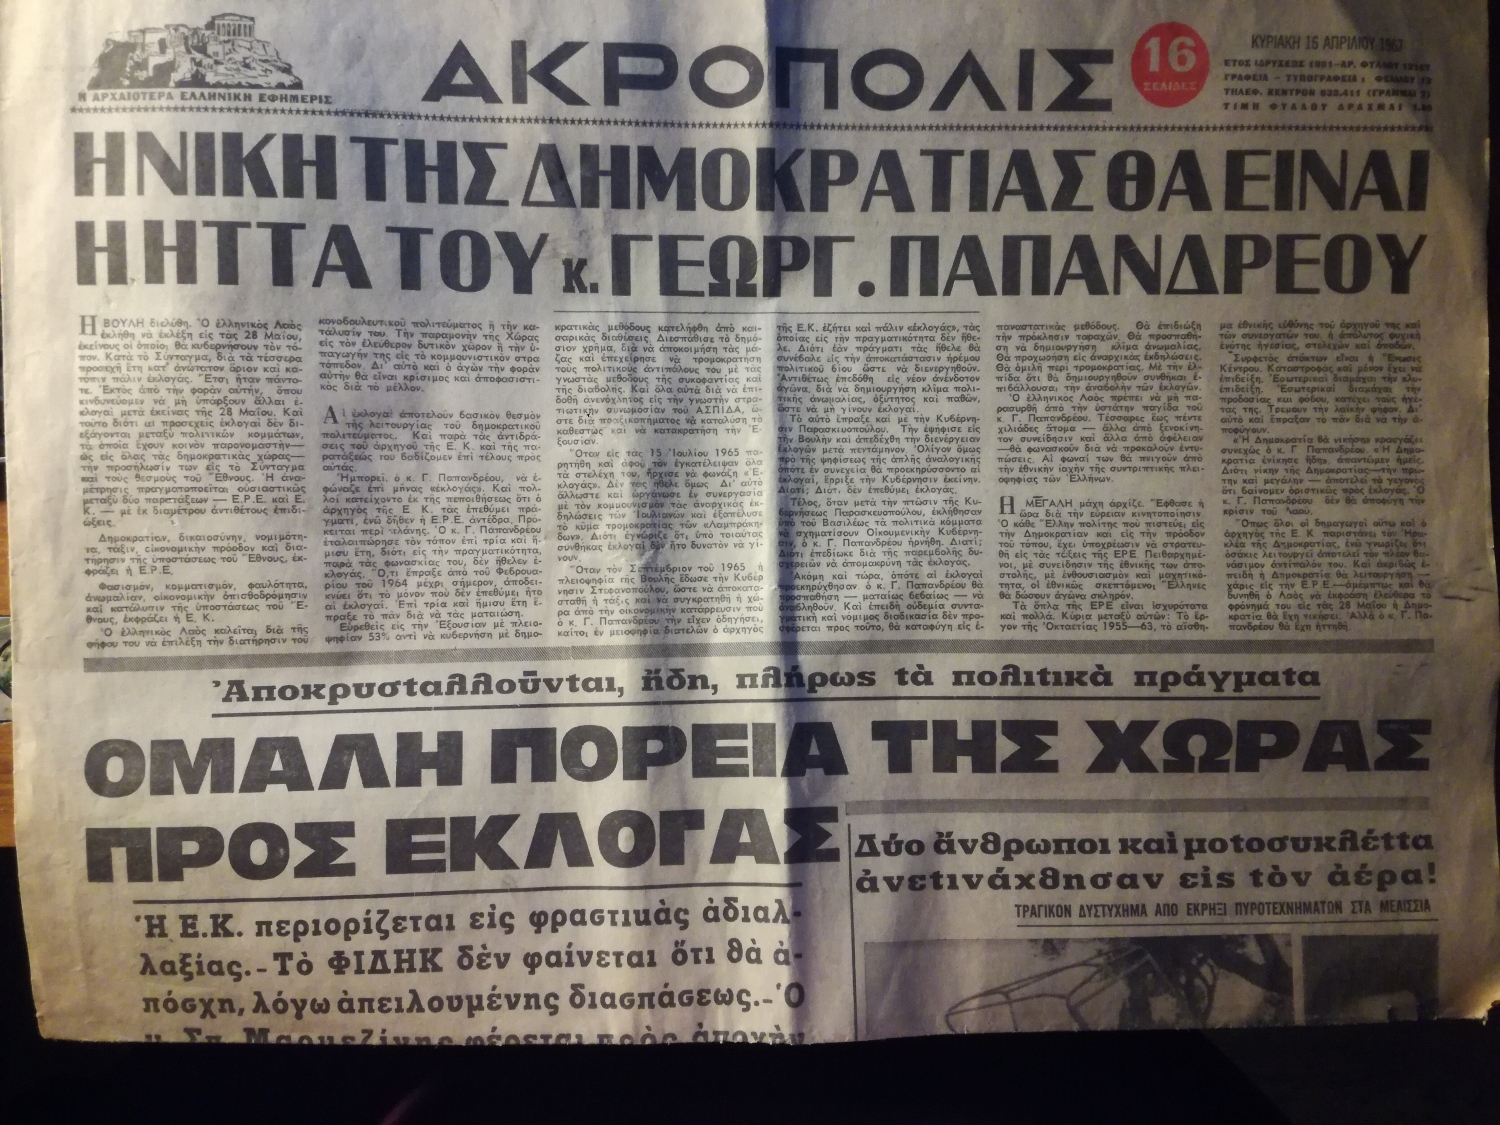 Εφημερίδα Ακρόπολη της 16ης Απριλίου 1967, λίγες μέρες πριν το πραξικόπημα των στρατιωτικών